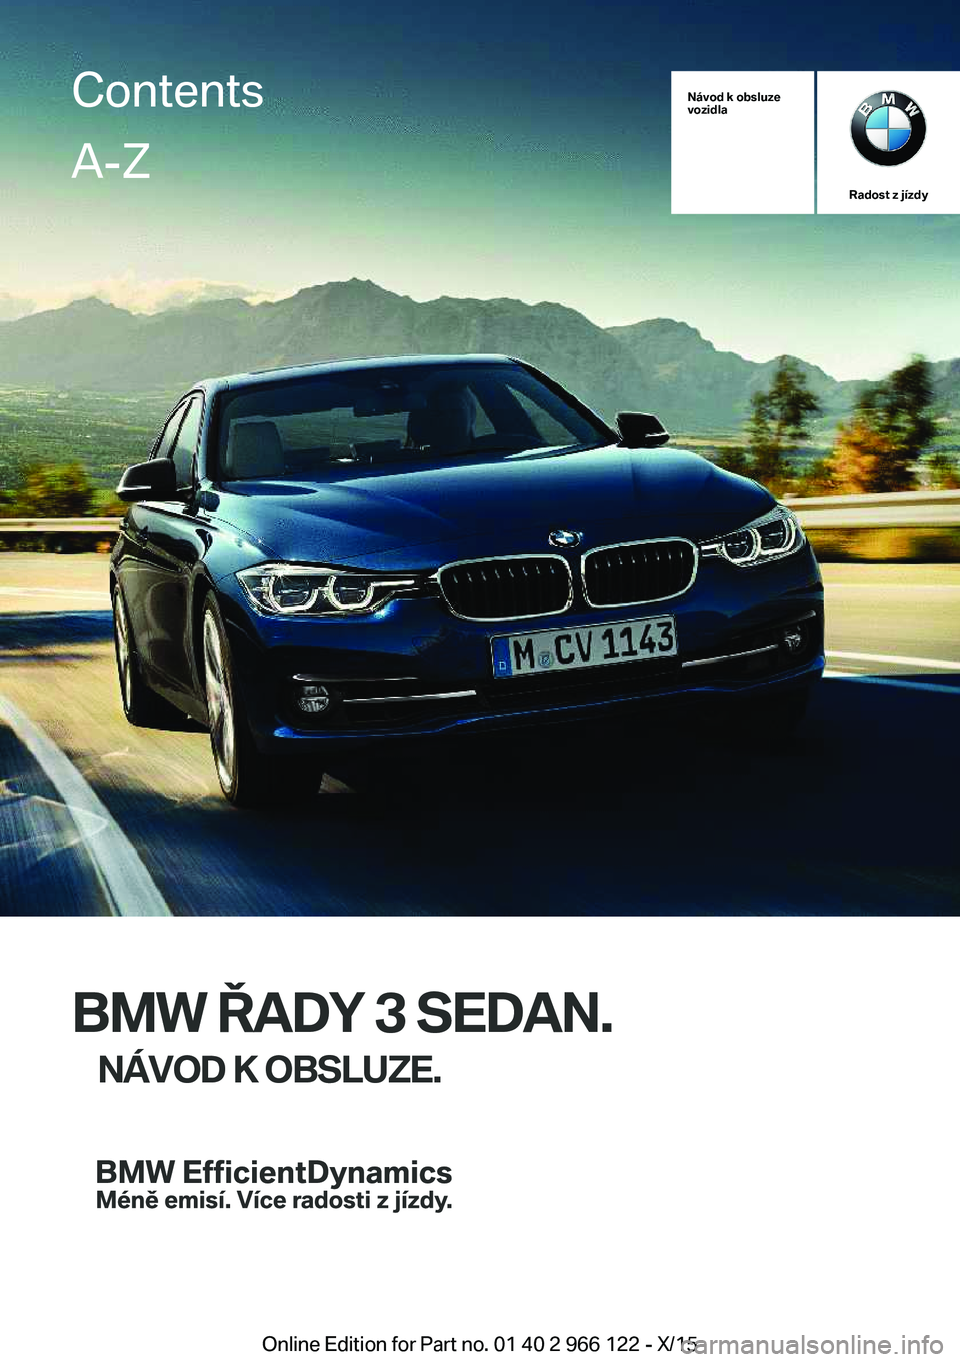 BMW 3 SERIES 2016  Návod na použití (in Czech) Návod k obsluze
vozidla
Radost z jízdy
BMW ŘADY 3 SEDAN.
NÁVOD K OBSLUZE.
ContentsA-Z
Online Edition for Part no. 01 40 2 966 122 - X/15   